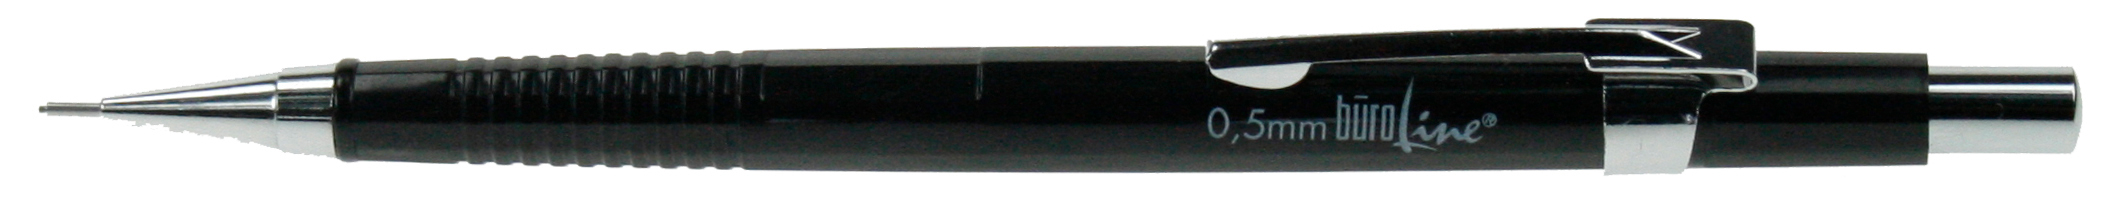 BüroLine Druckstift 0.5mm schwarz<br>